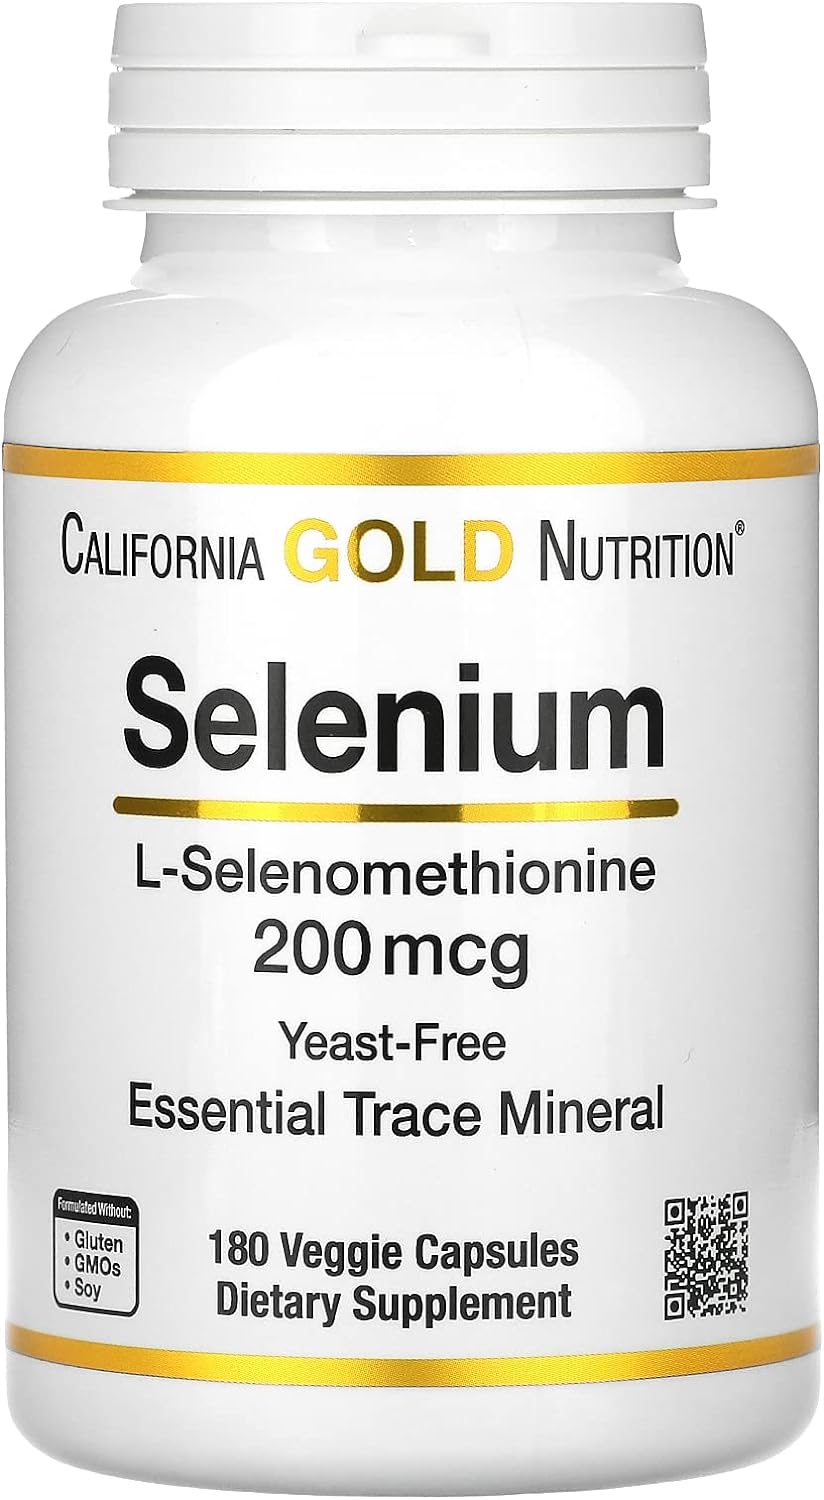 California Gold Nutrition Selenium, L-Selenomethionine, Essential Mineral Antioxidant Support, Yeast-Free, 200 mcg, 180 Veggie Capsules